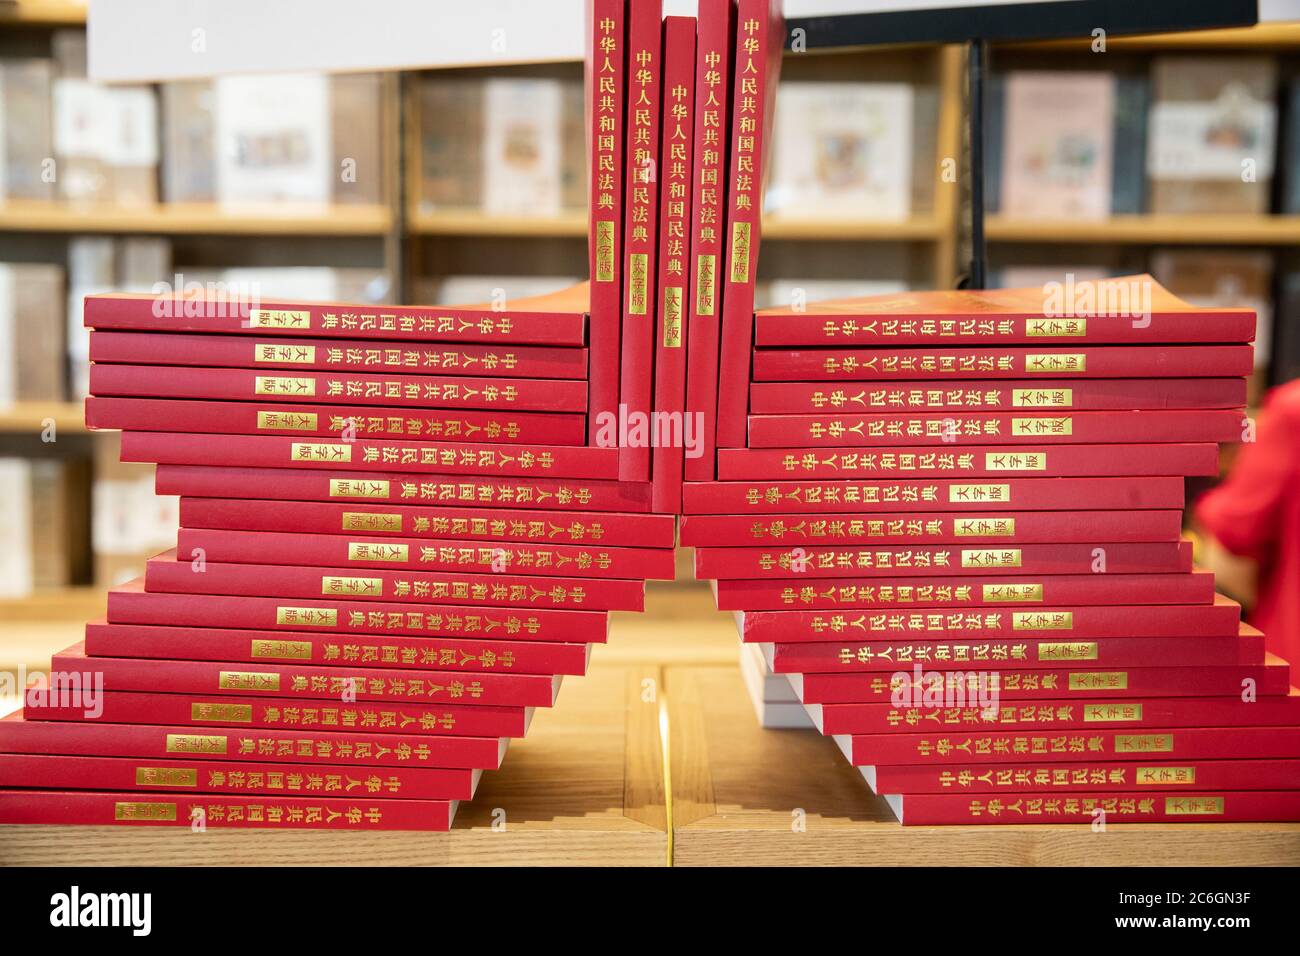 Das erste chinesische Zivilgesetzbuch, das "chinesische Zivilgesetzbuch", wird in einer Buchhandlung in Hefei, der ostchinesischen Provinz Anhui, am 18. Juni 2020 verkauft. Stockfoto